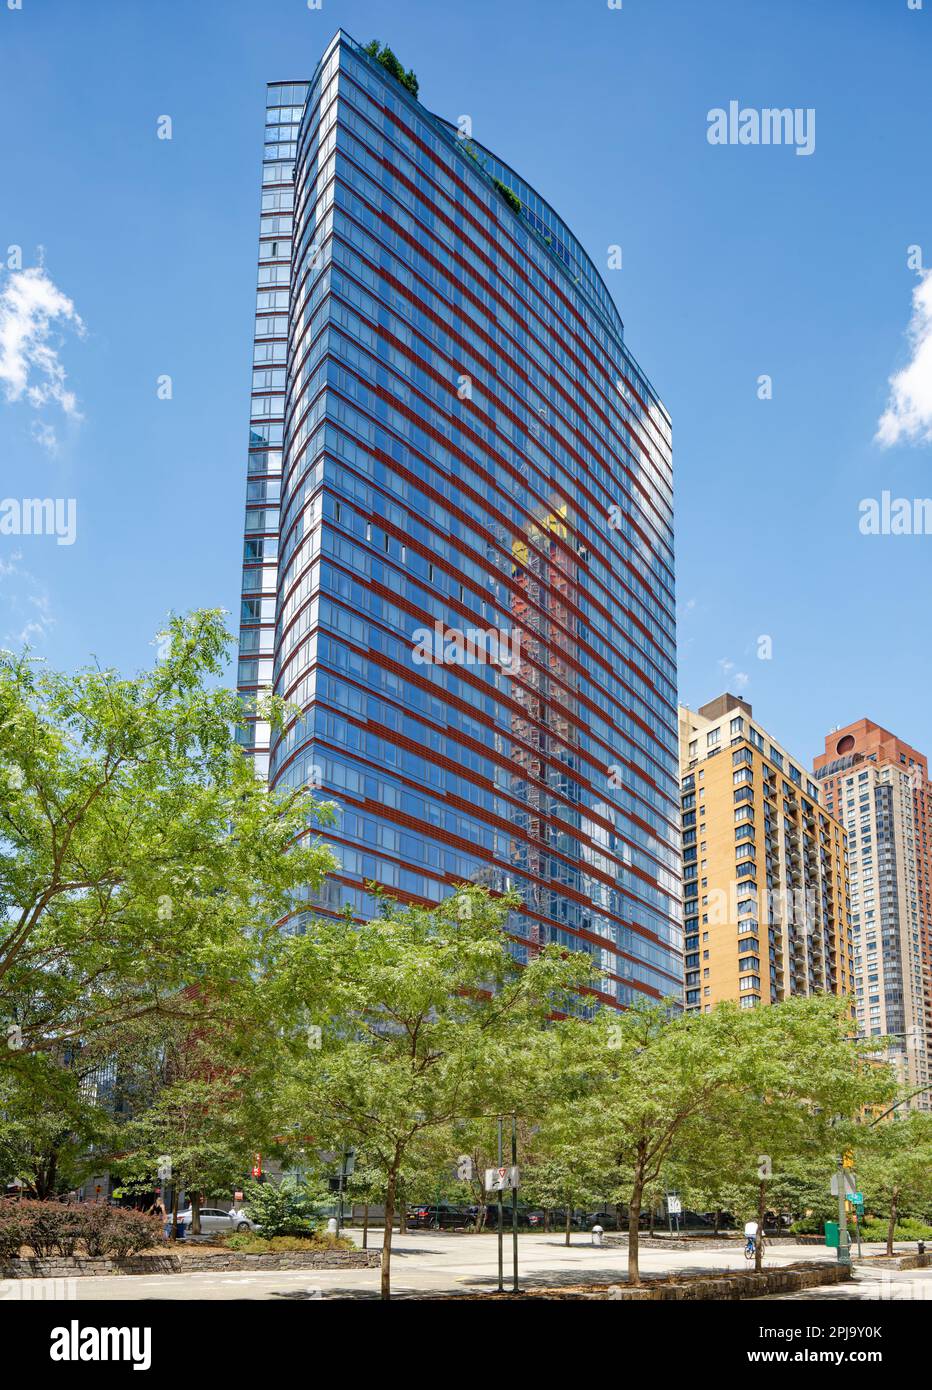 Visionaire est un immeuble d'habitation en copropriété situé dans Battery Park City avec une façade en verre incurvée distinctive accentuée par des bandes horizontales rouges. Banque D'Images